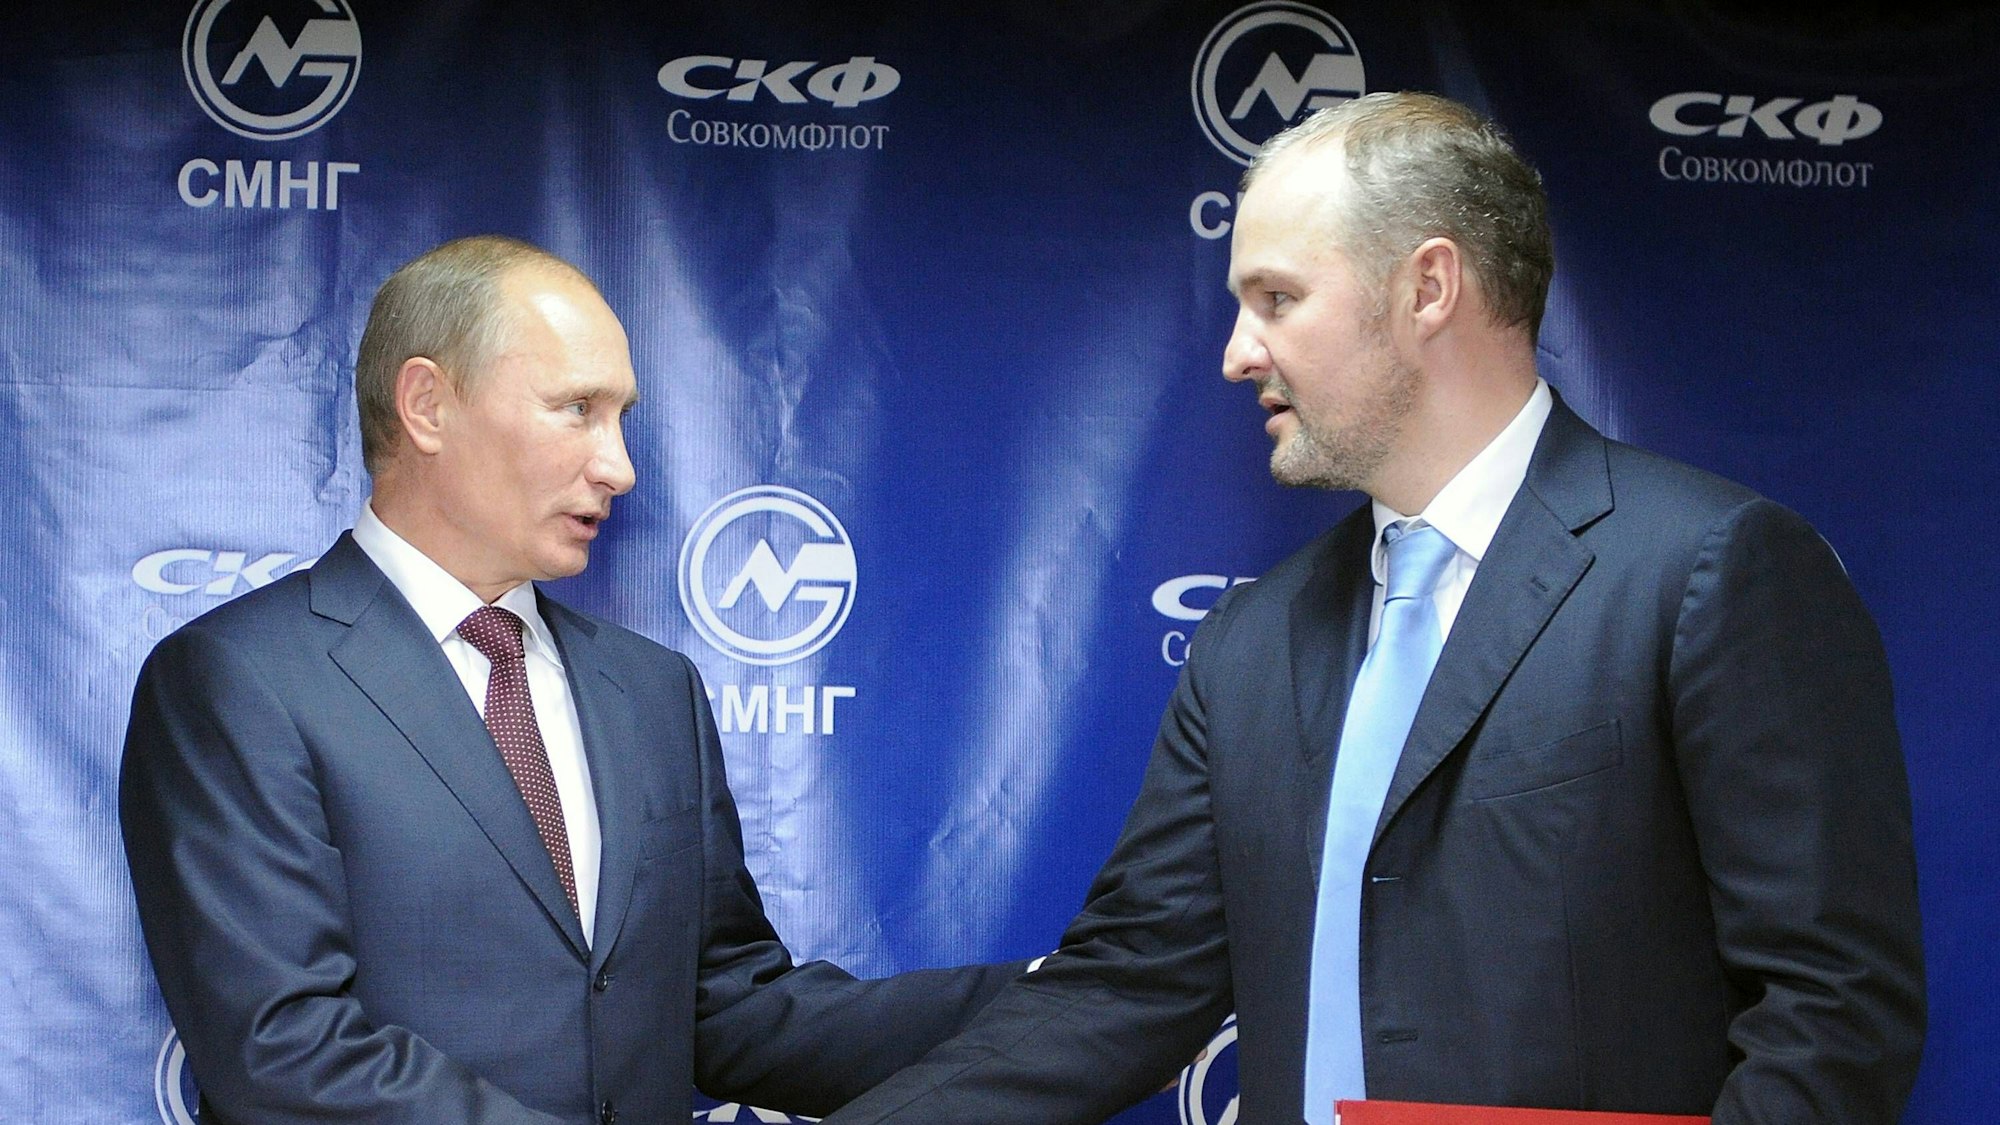 Eine Aufnahme aus dem Jahr 2011: Wladimir Putin und Roman Trotsenko schütteln sich nach einem Geschäftsabschluss die Hände. (Archivbild)